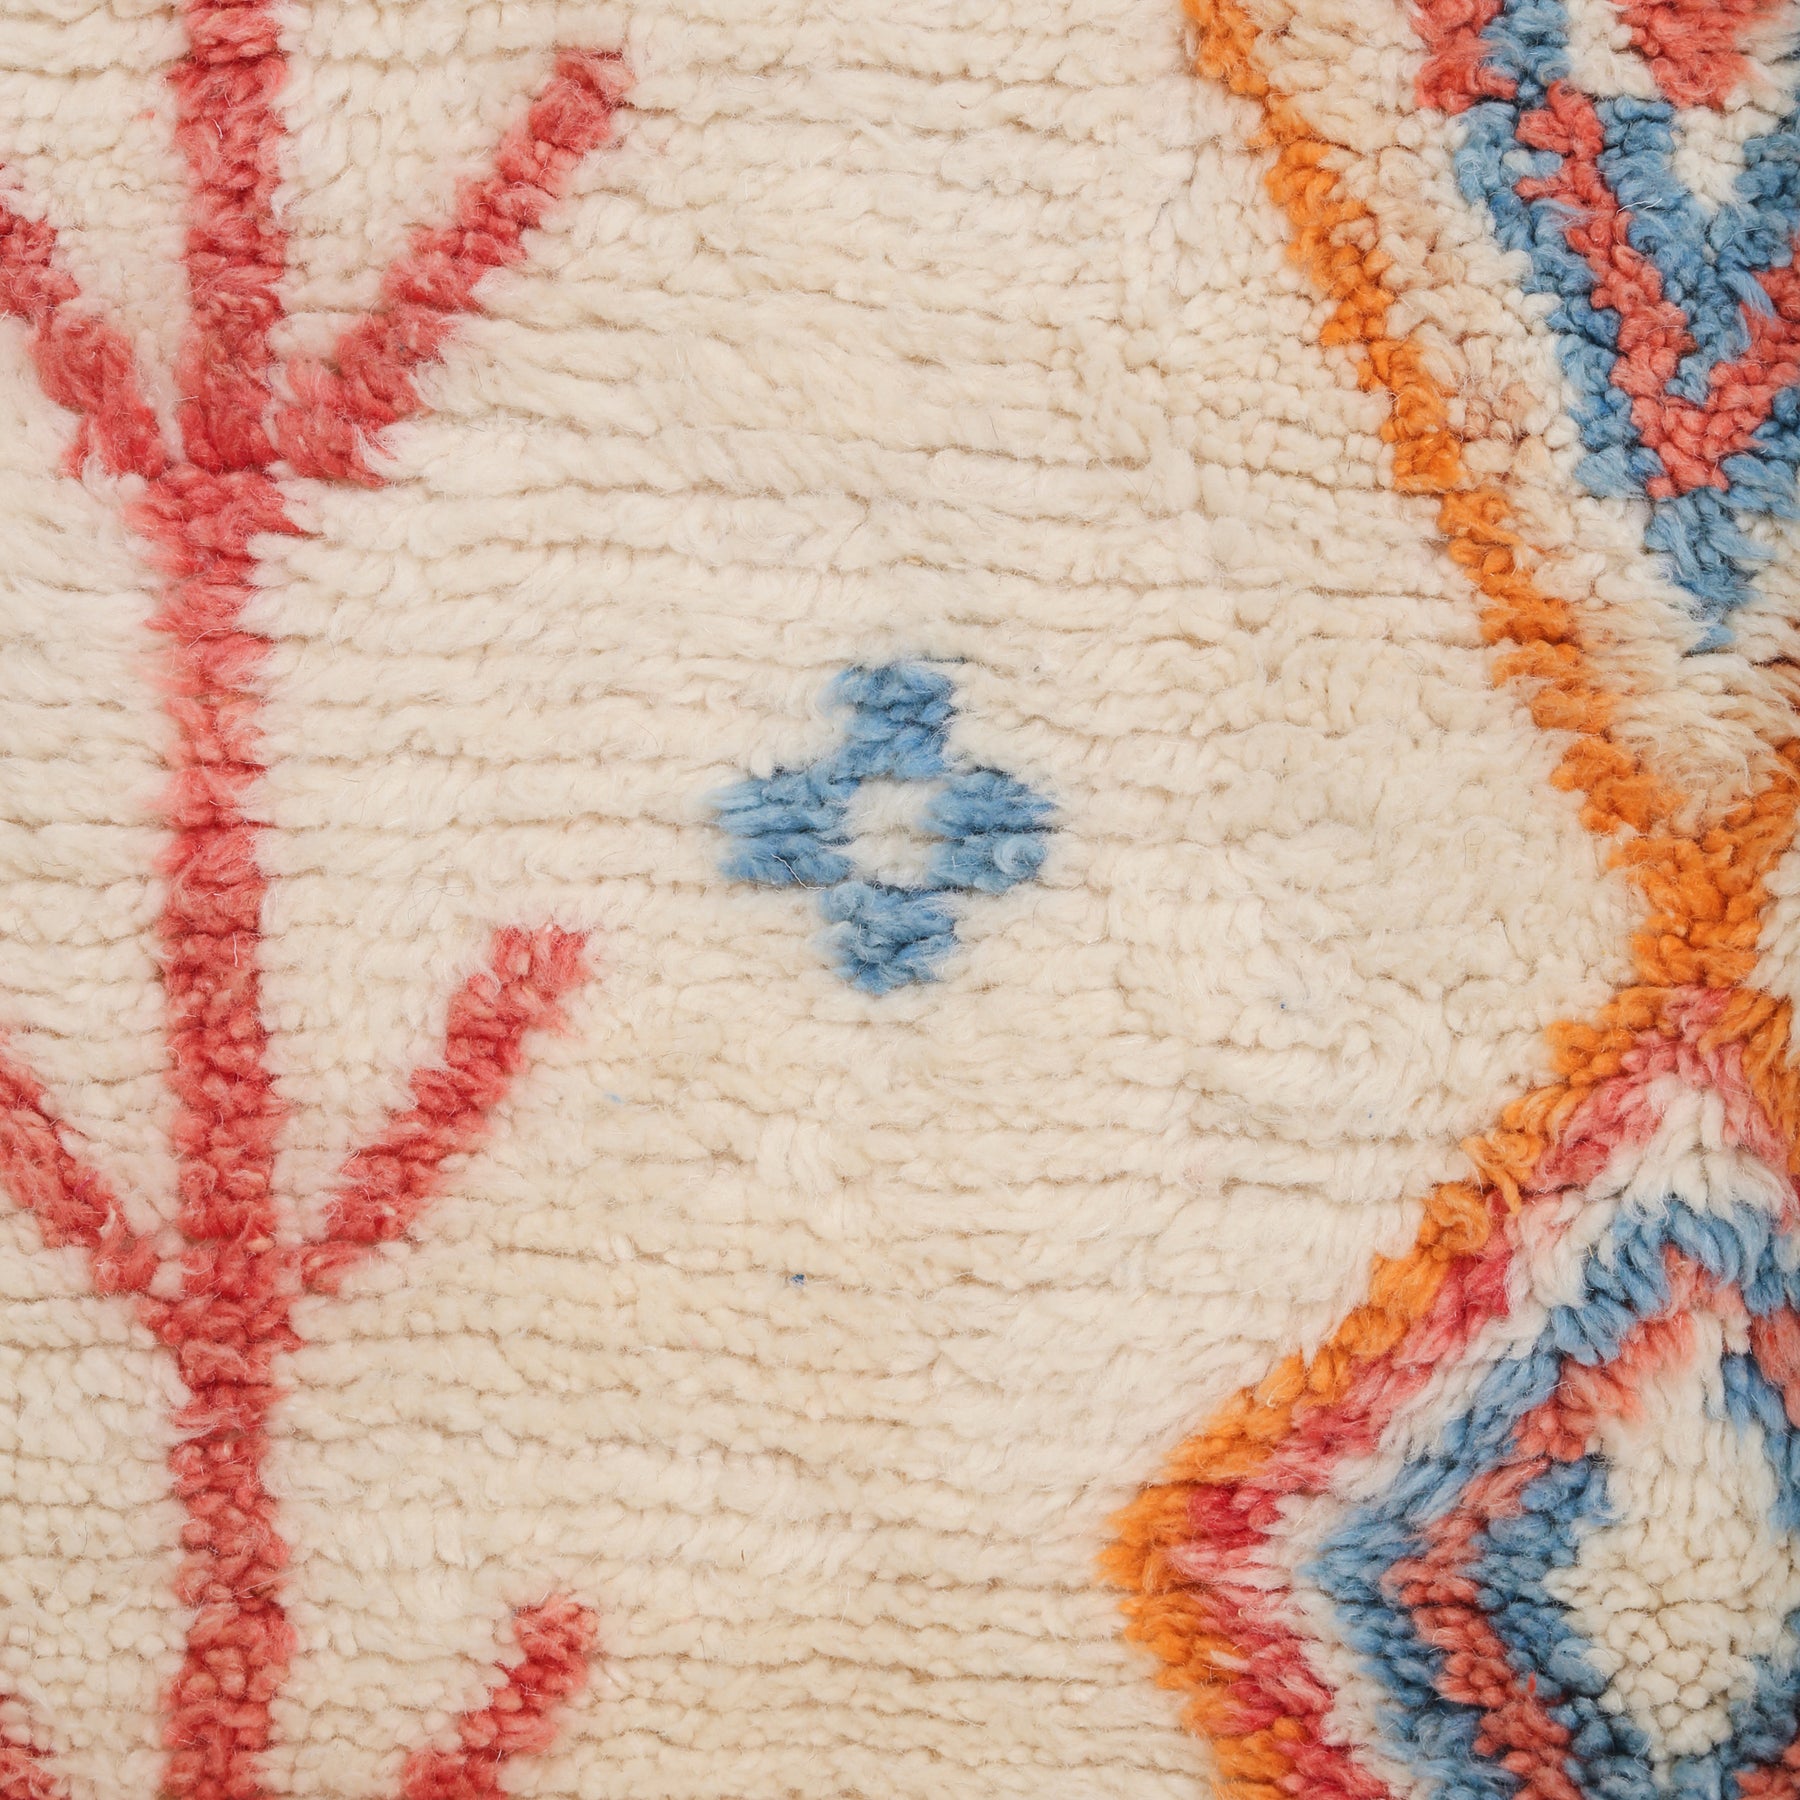 dettaglio della lana chiara e brillante di un tappeto, nonche di alcuni simboli visibili sul tappeto